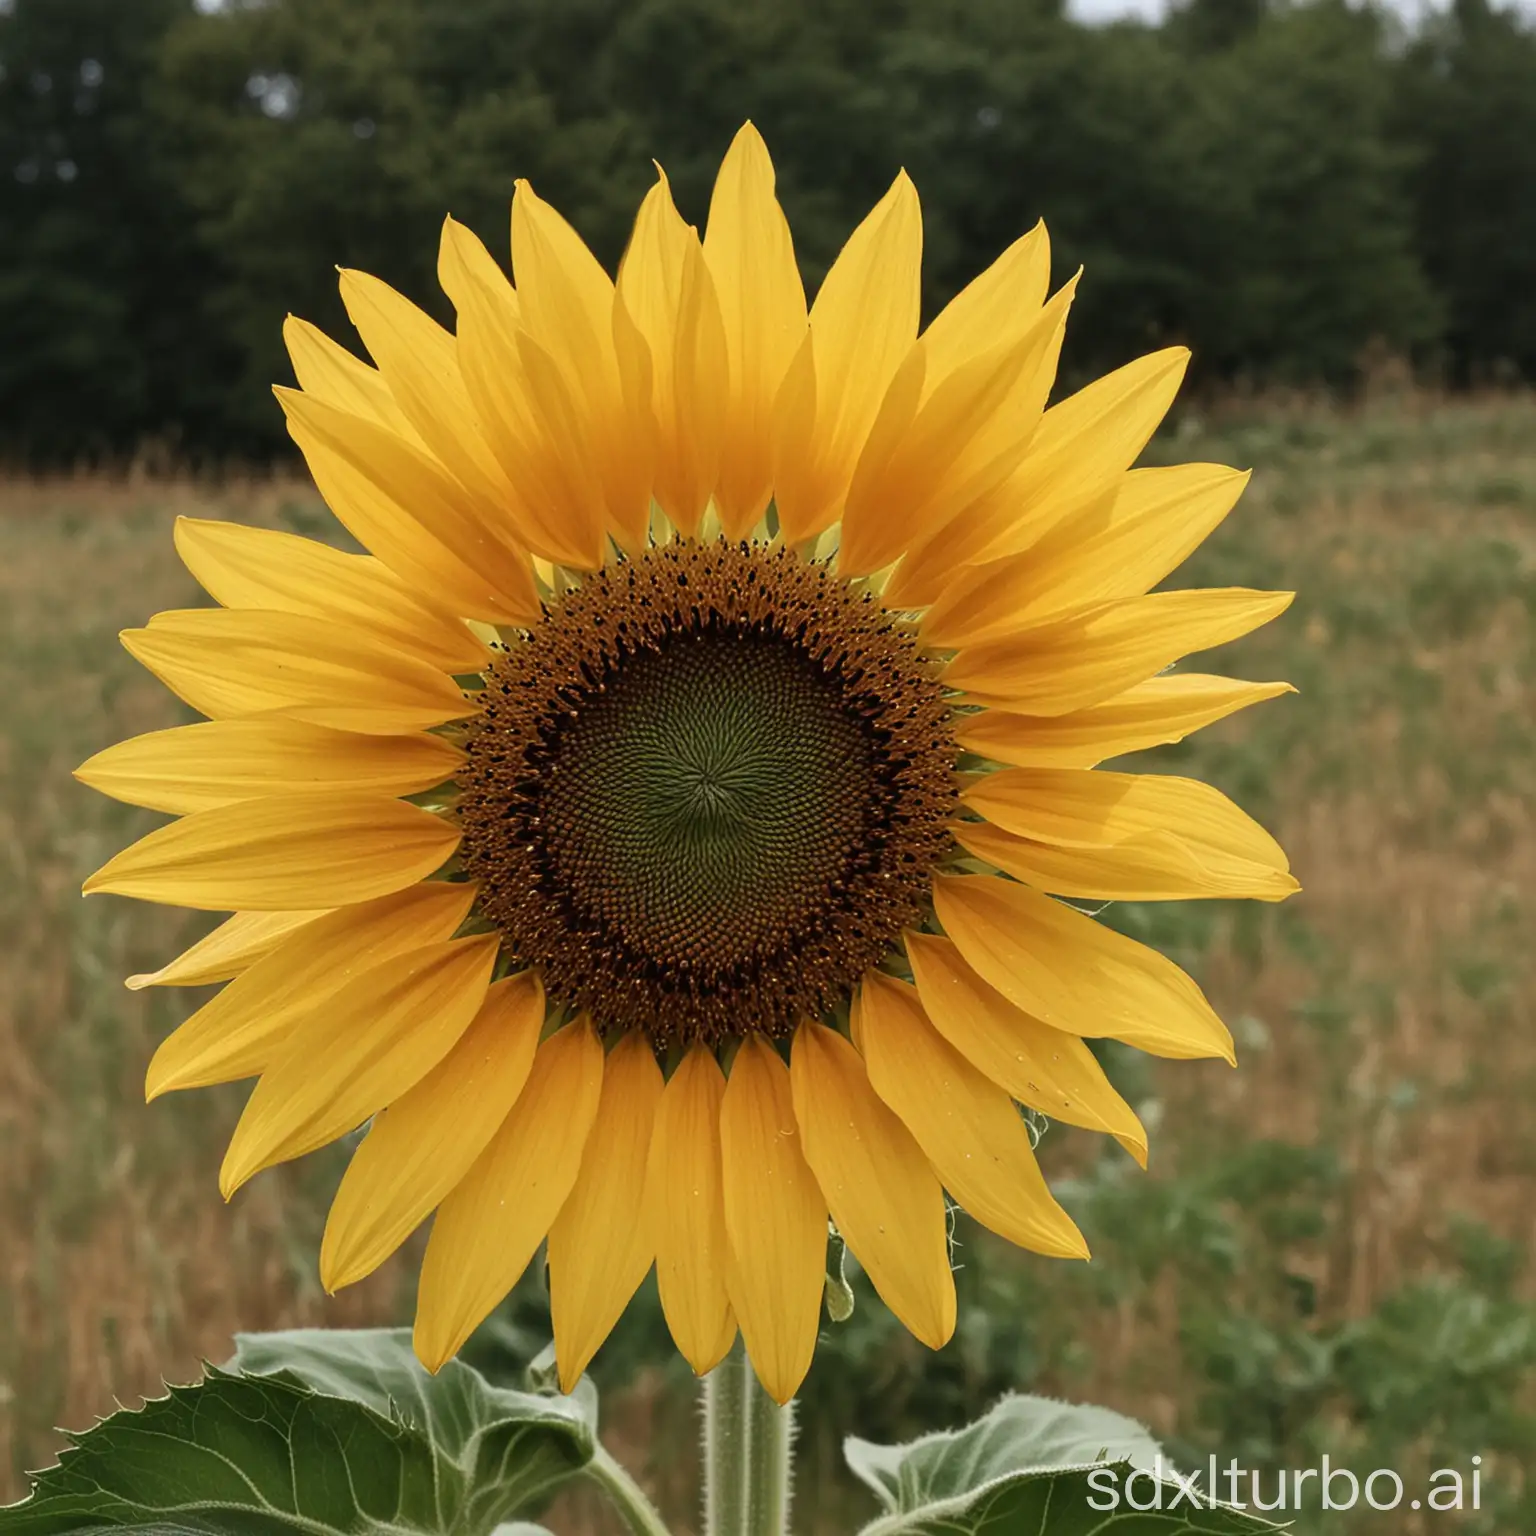 Vibrant-Sunflower-Field-in-Full-Bloom